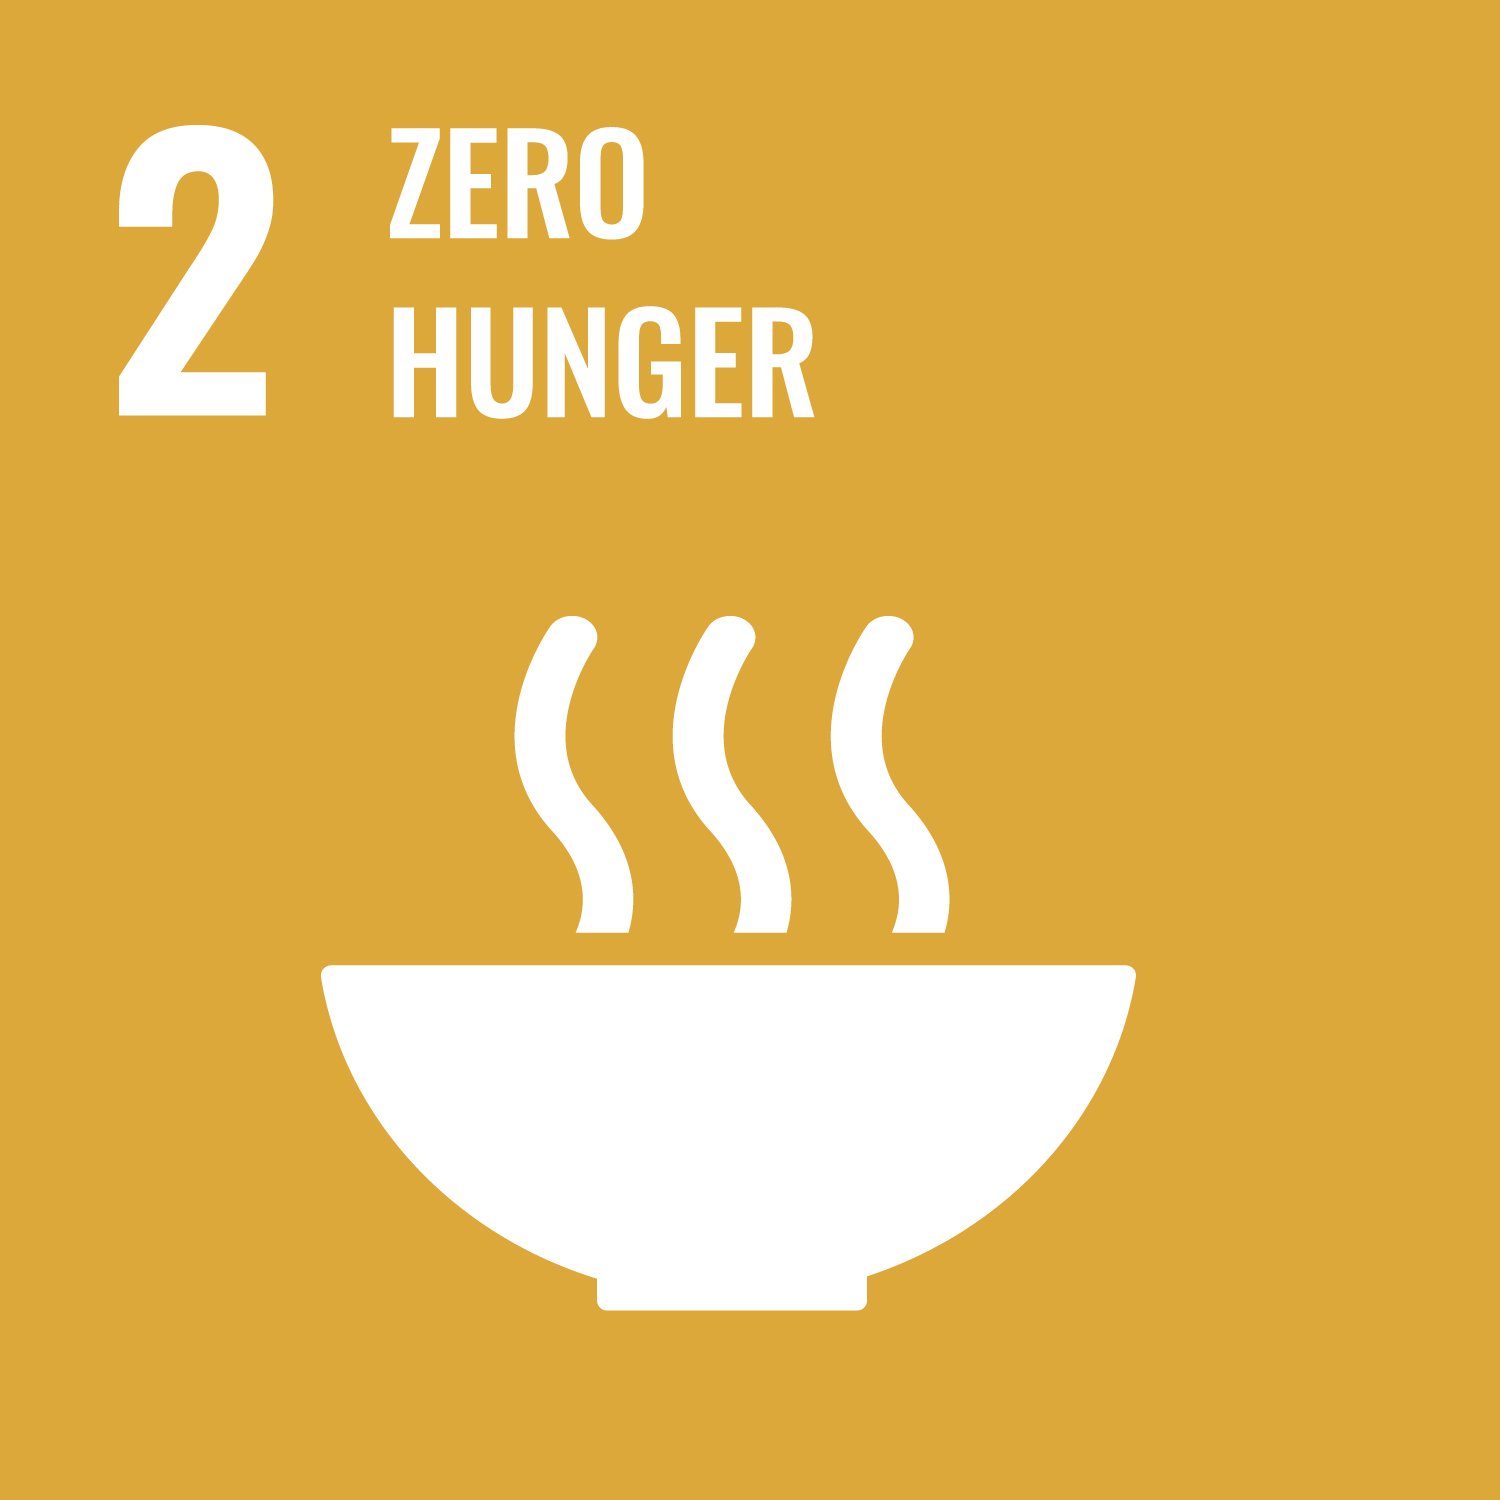 Brazil’s Zero Hunger Programme